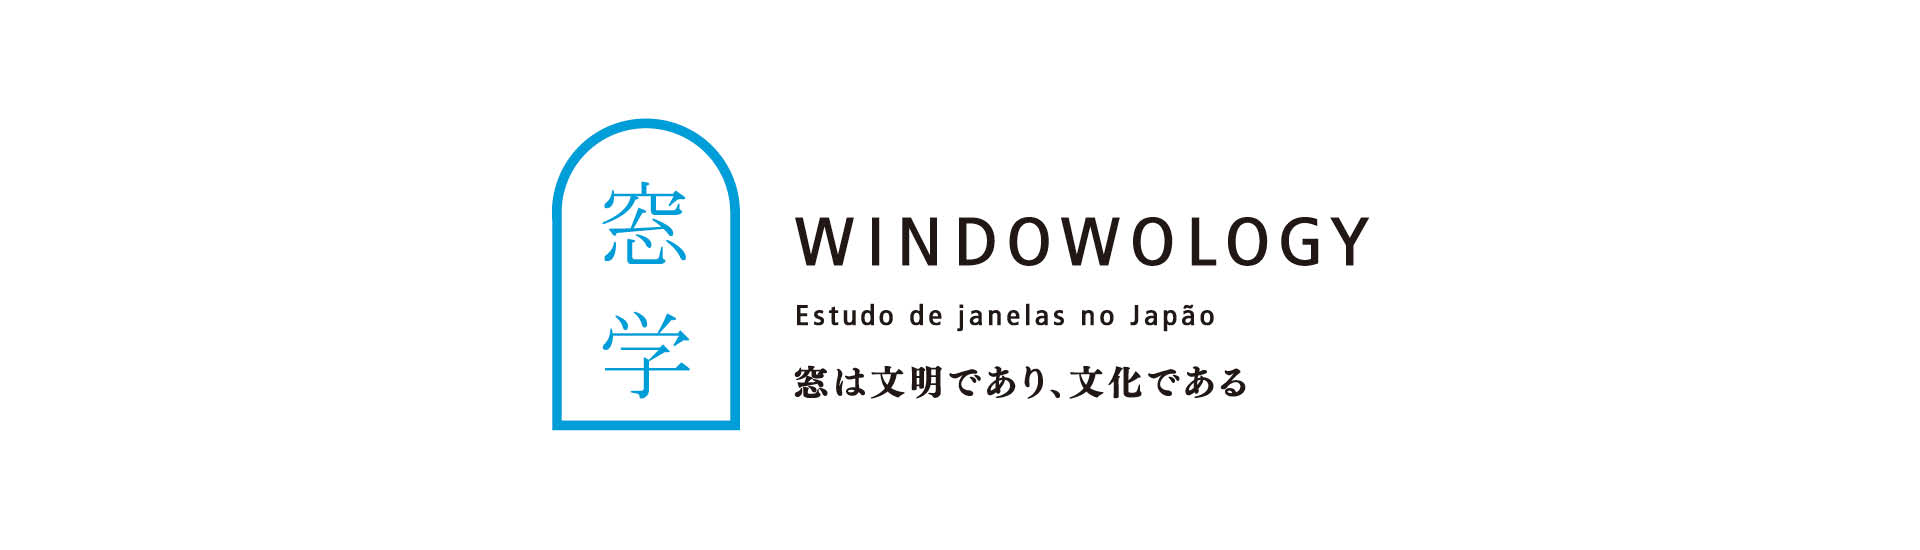 WINDOWOLOGY: Estudo de janelas no Japão